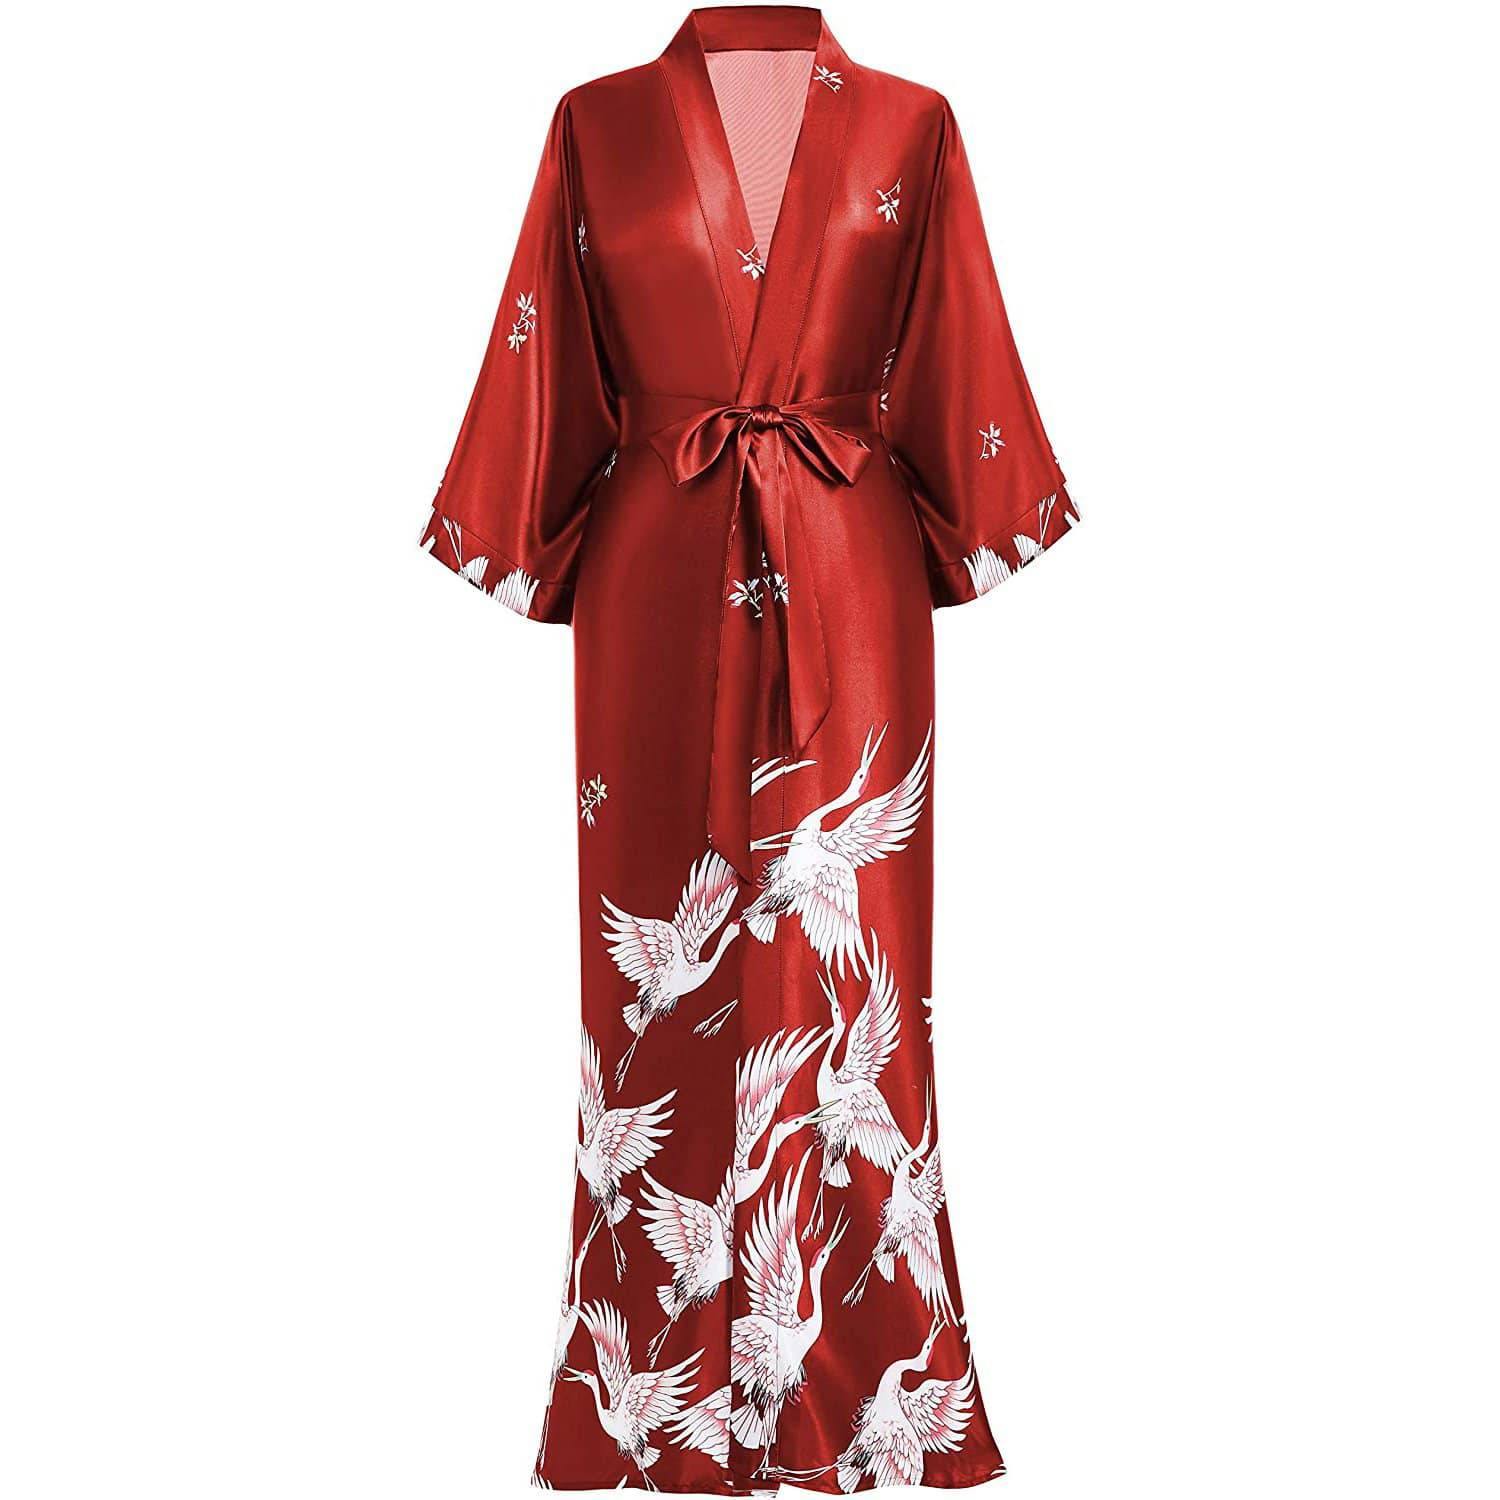 Red Silky Satin Kimono Robe